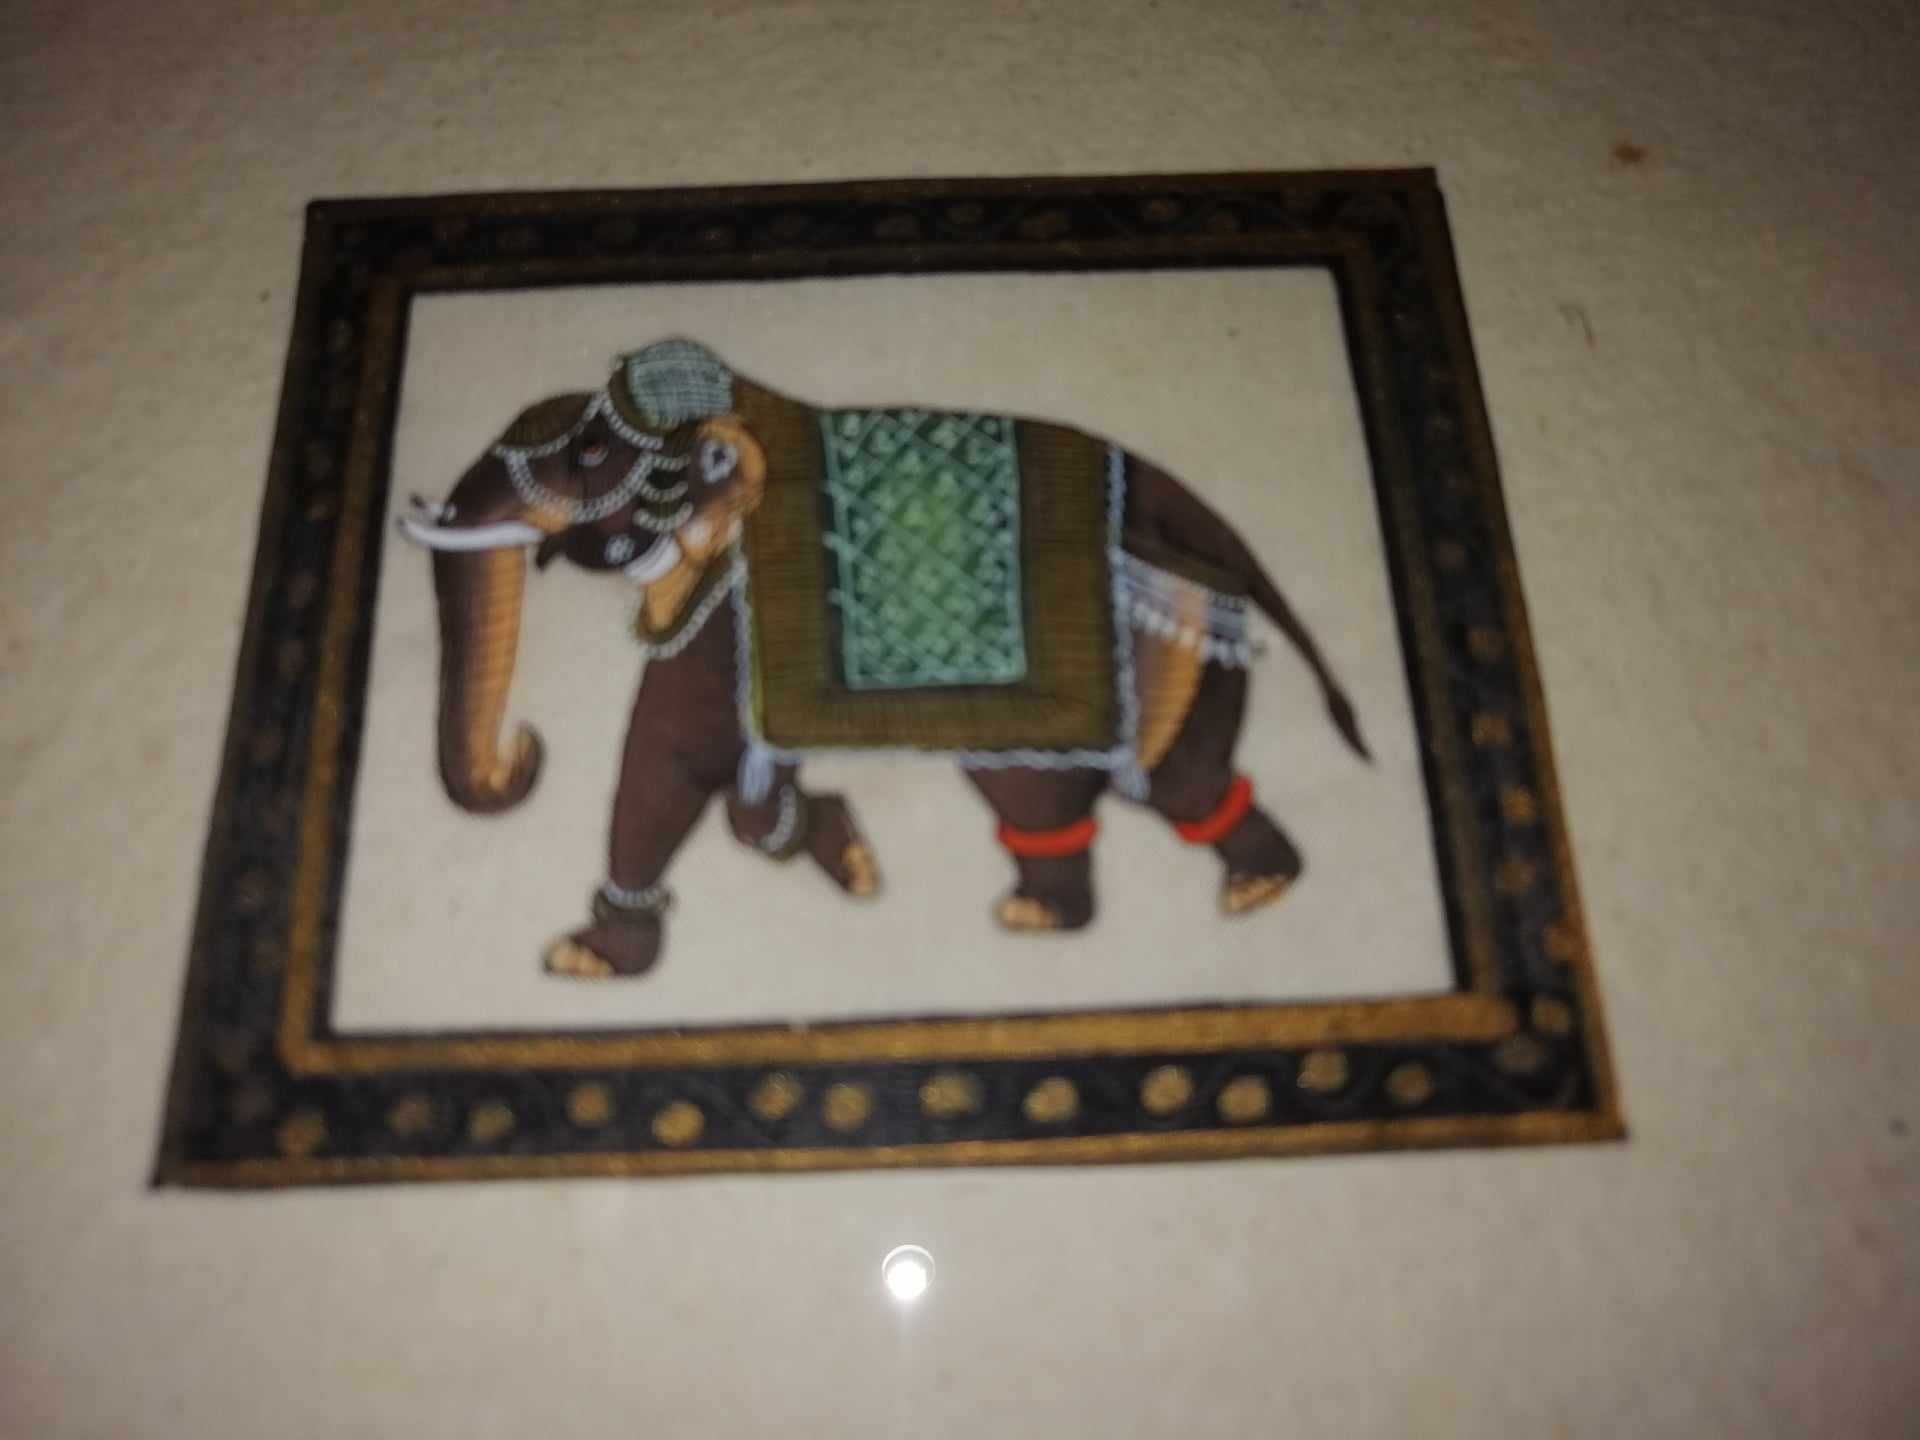 3x Tablou pictura in miniatura elefant India pictat manual pe matase